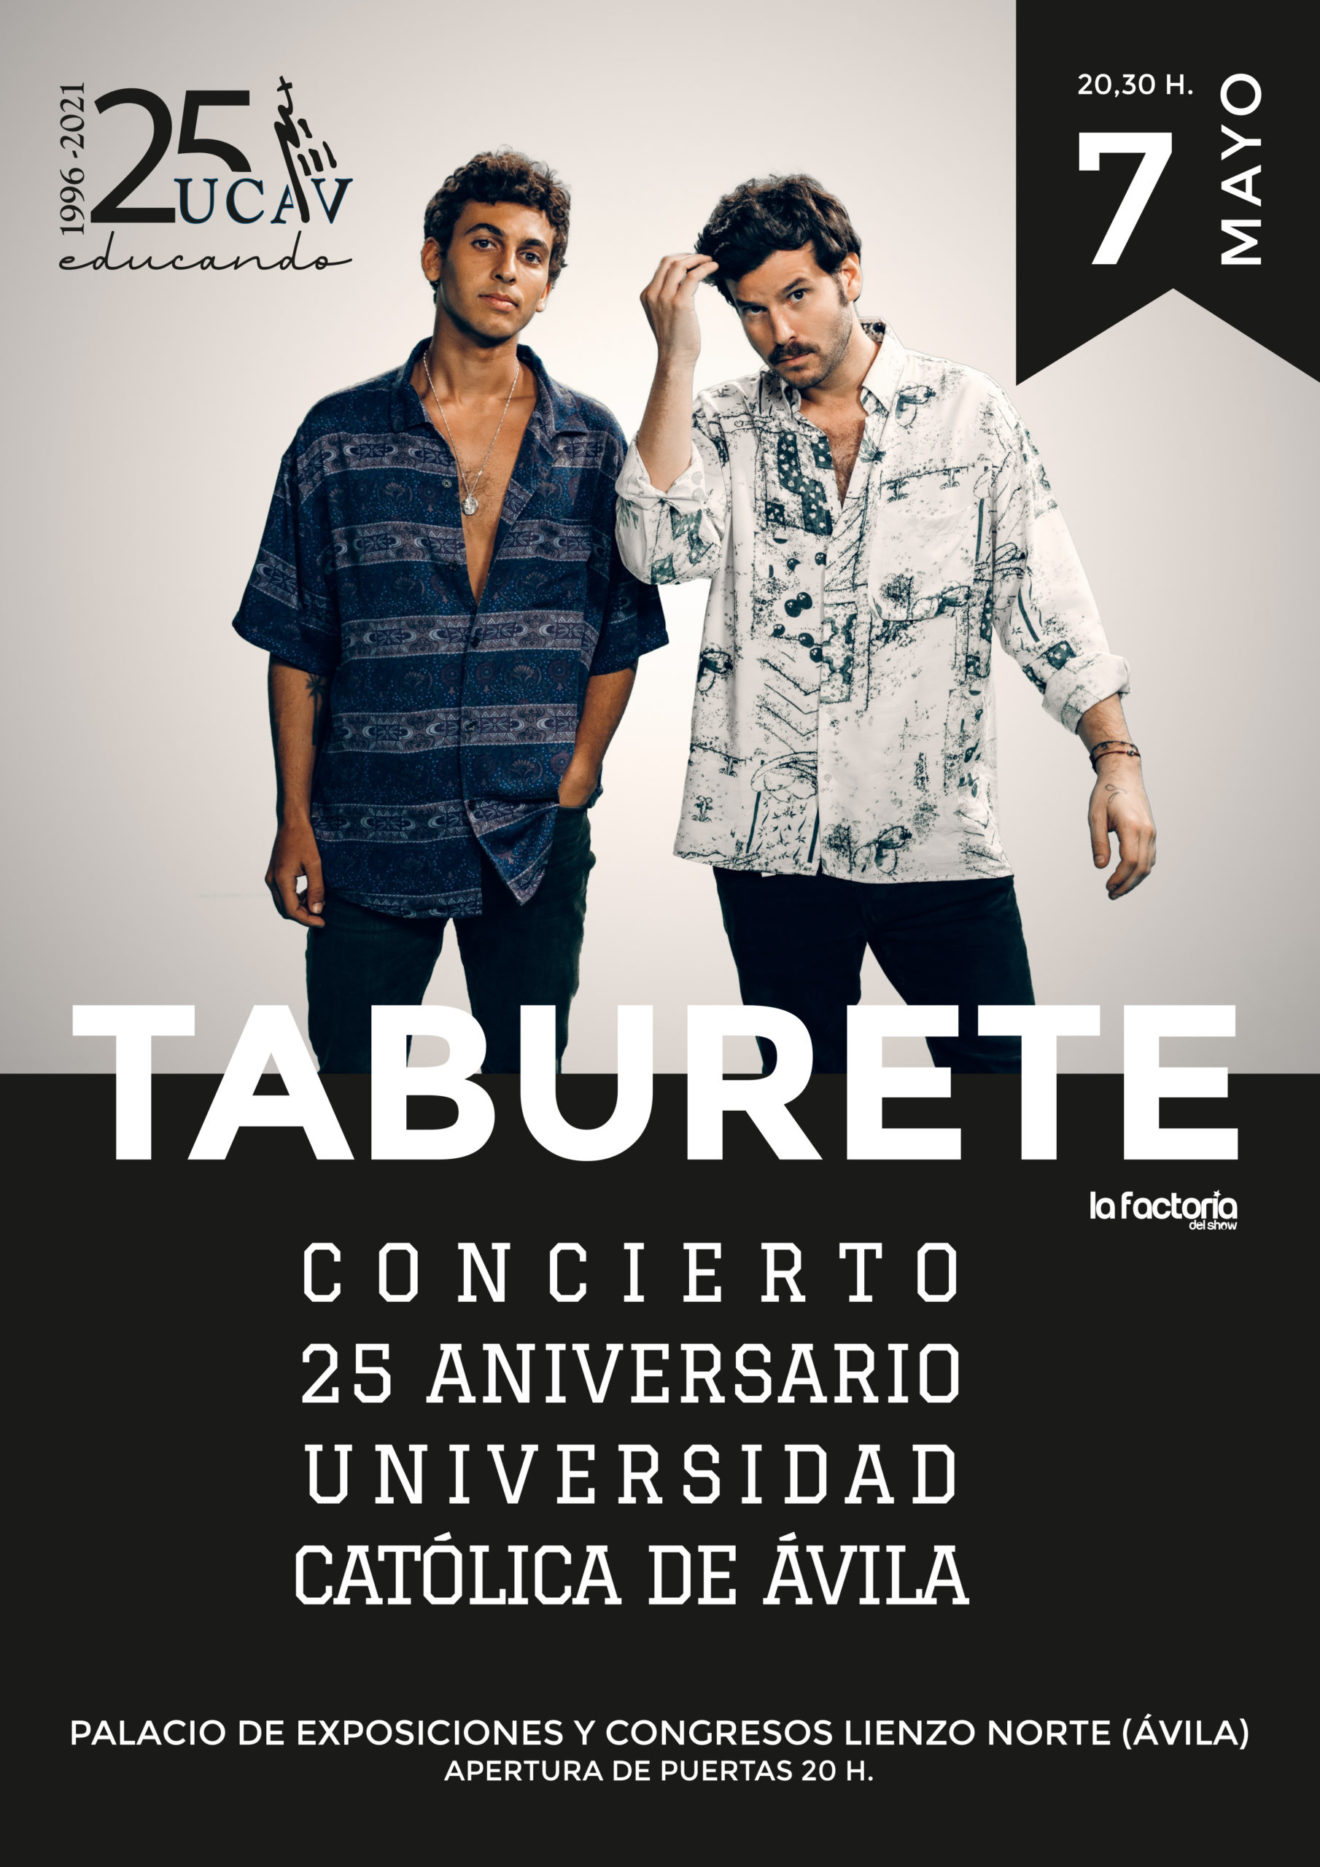 Taburete lanza una invitación para su concierto del 25 Aniversario de la Universidad Católica de Ávila (UCAV)